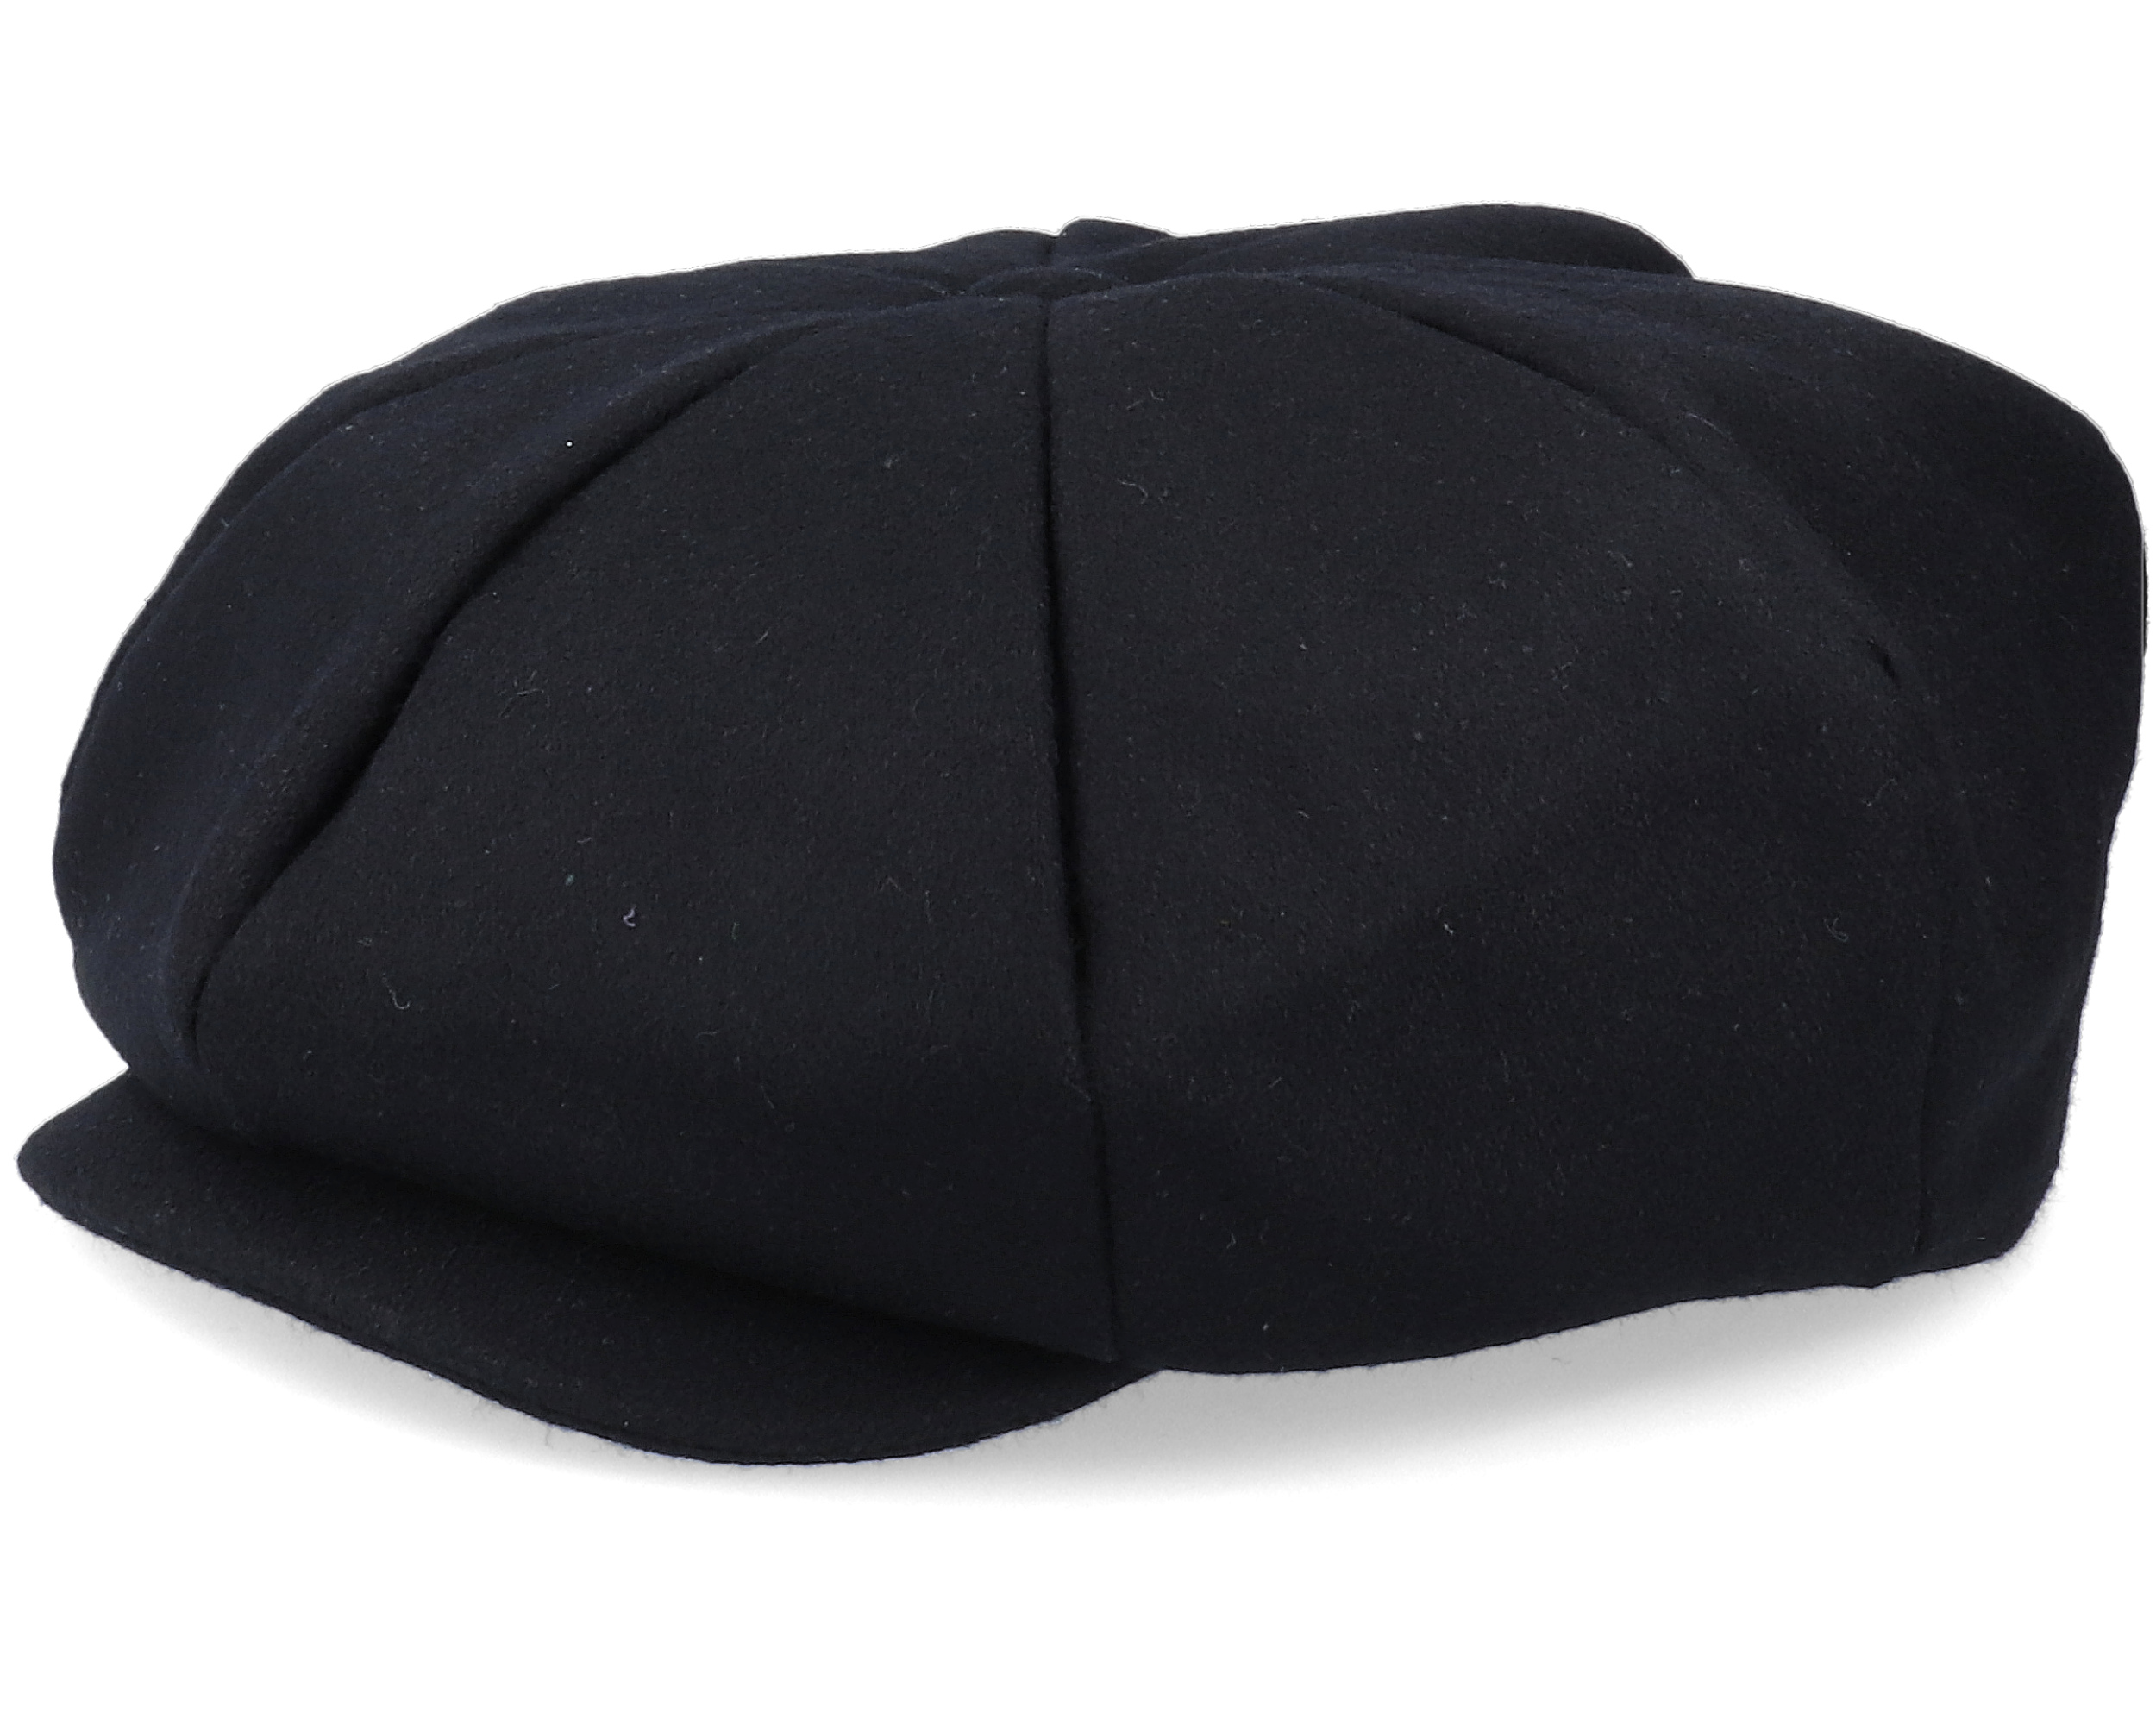 Big Apple Hat Black Flat Cap - Jaxon & James cap